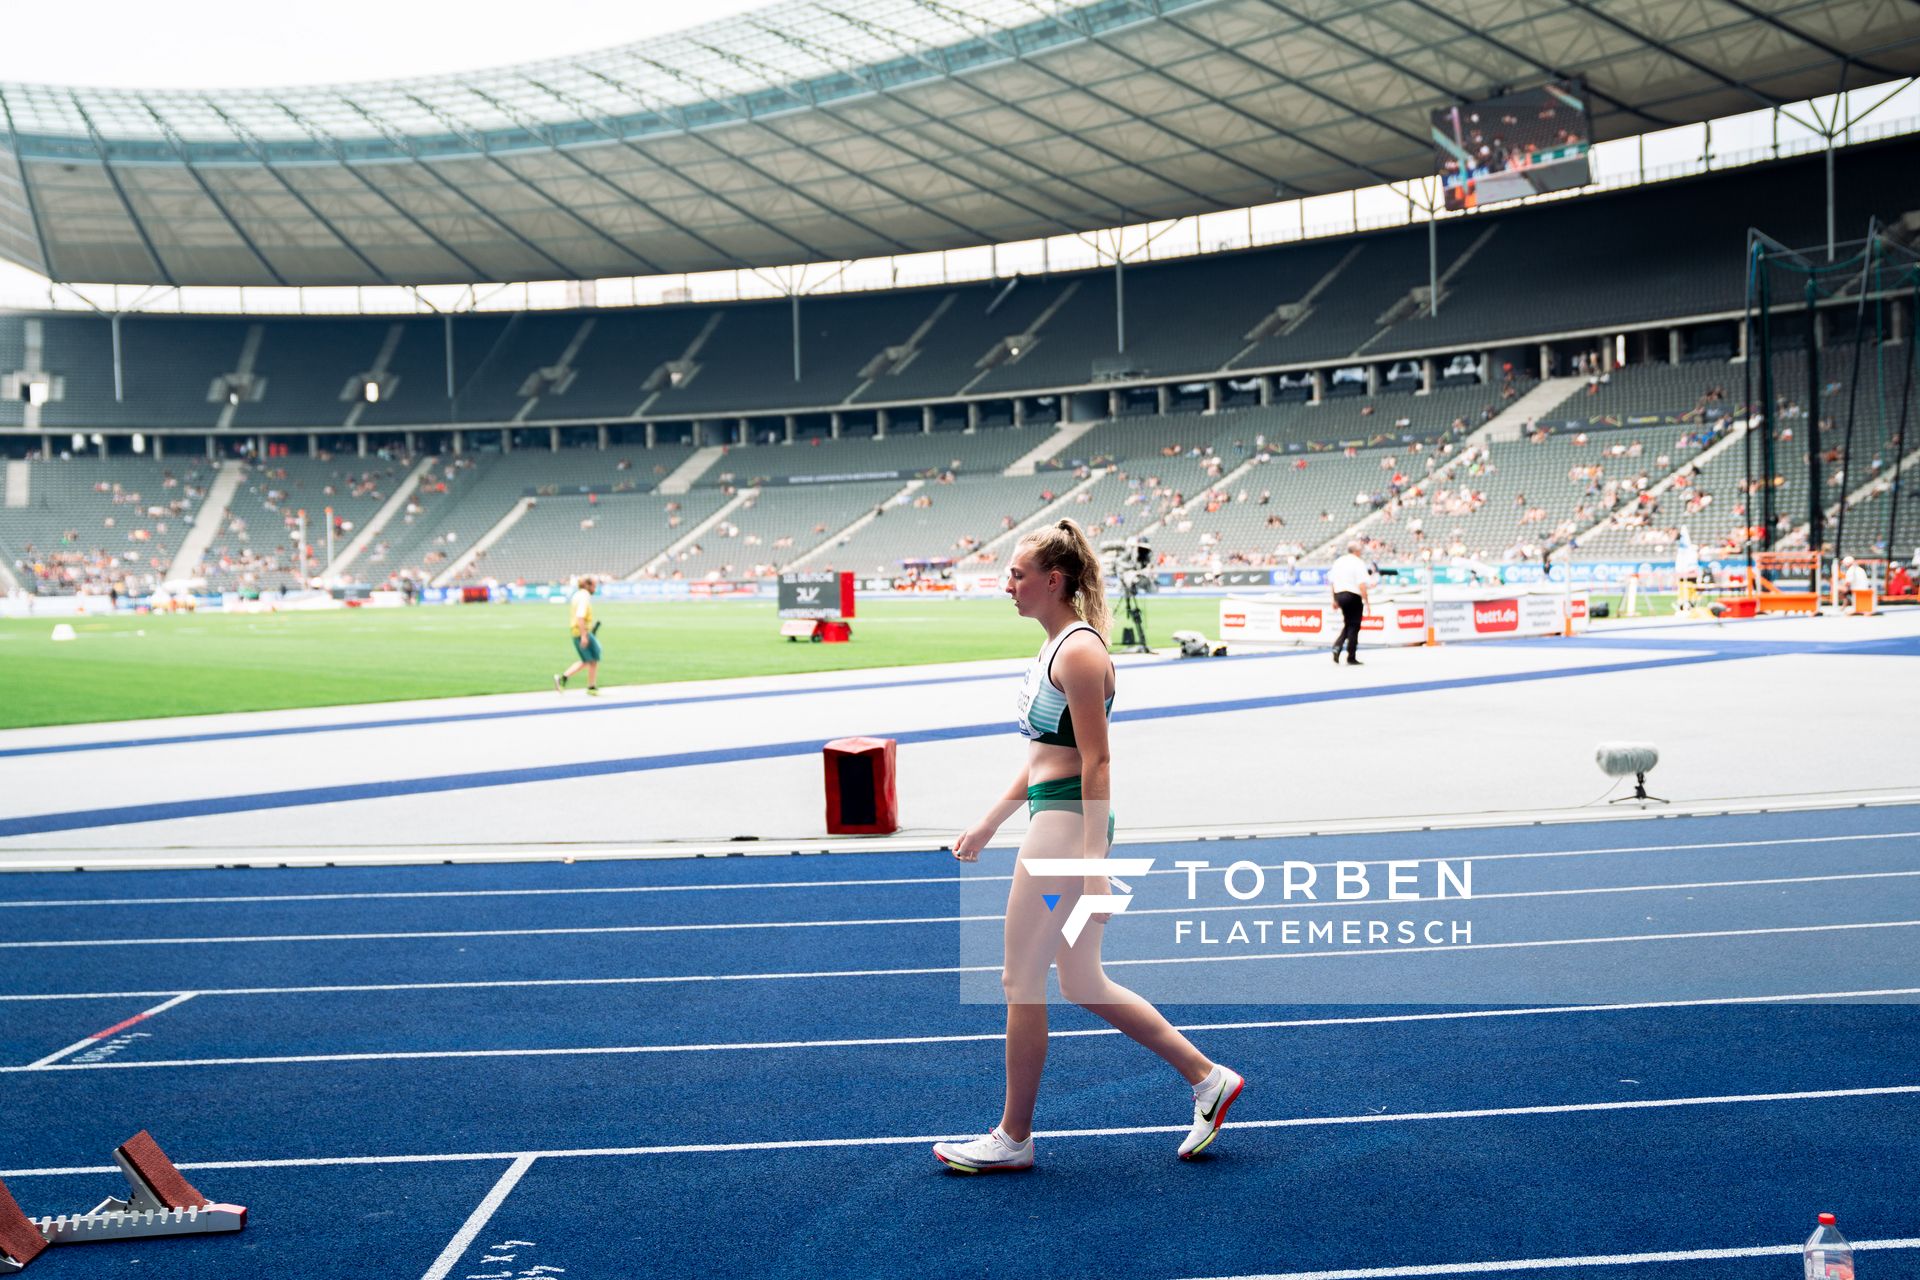 Gisele Wender (SV Preussen Berlin) vor dem 400m Huerden Halbfinale waehrend der deutschen Leichtathletik-Meisterschaften im Olympiastadion am 25.06.2022 in Berlin